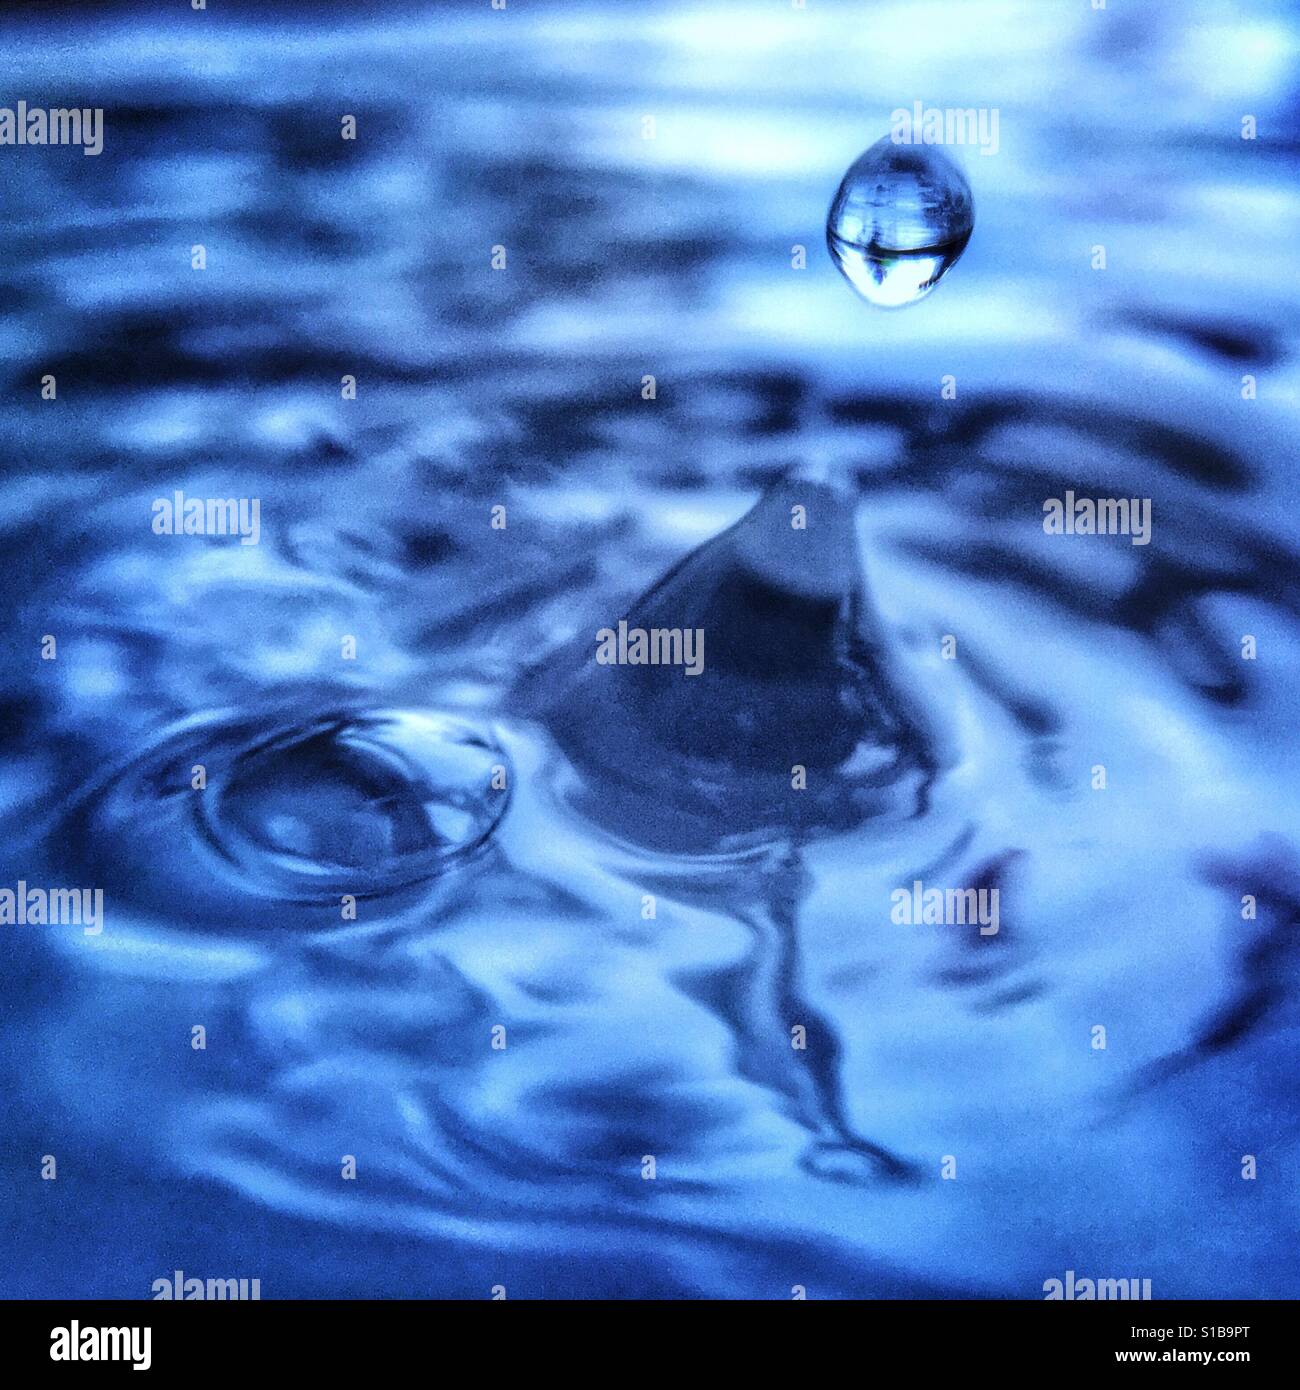 Close-up iPhone photographie prise avec un objectif macro Pièce jointe d'un éclaboussement de gouttelette d'eau dans un bassin d'eau. Banque D'Images